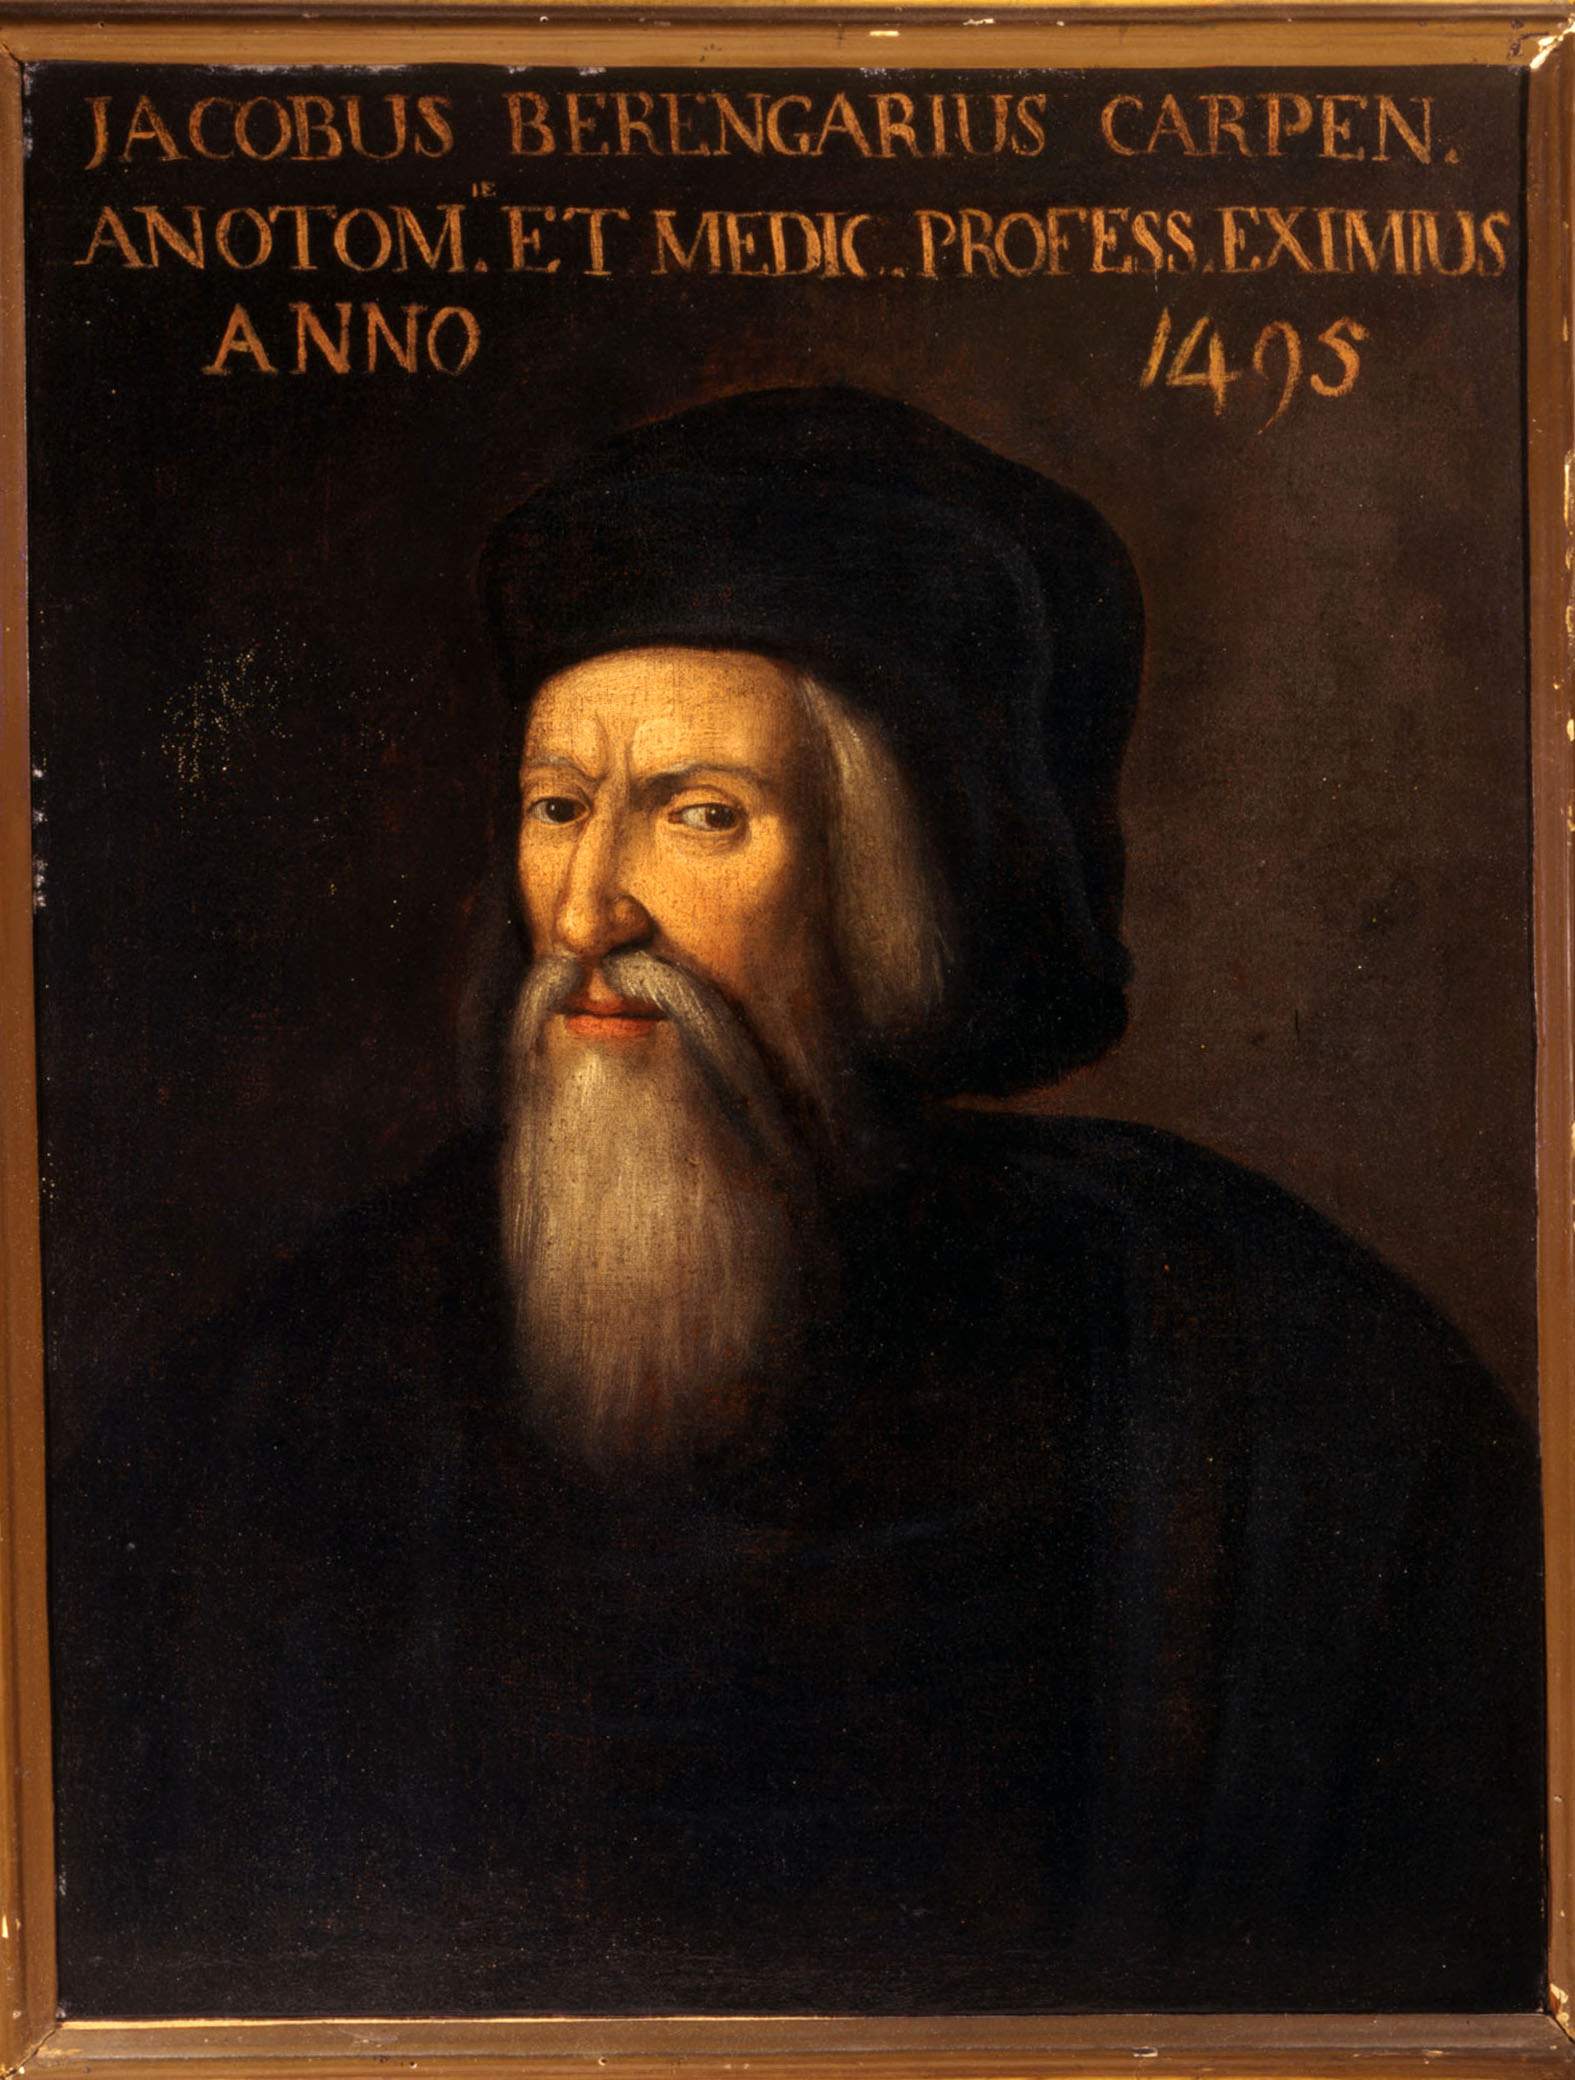 An exhibition in Carpi on Berengario da Carpi, the Renaissance physician